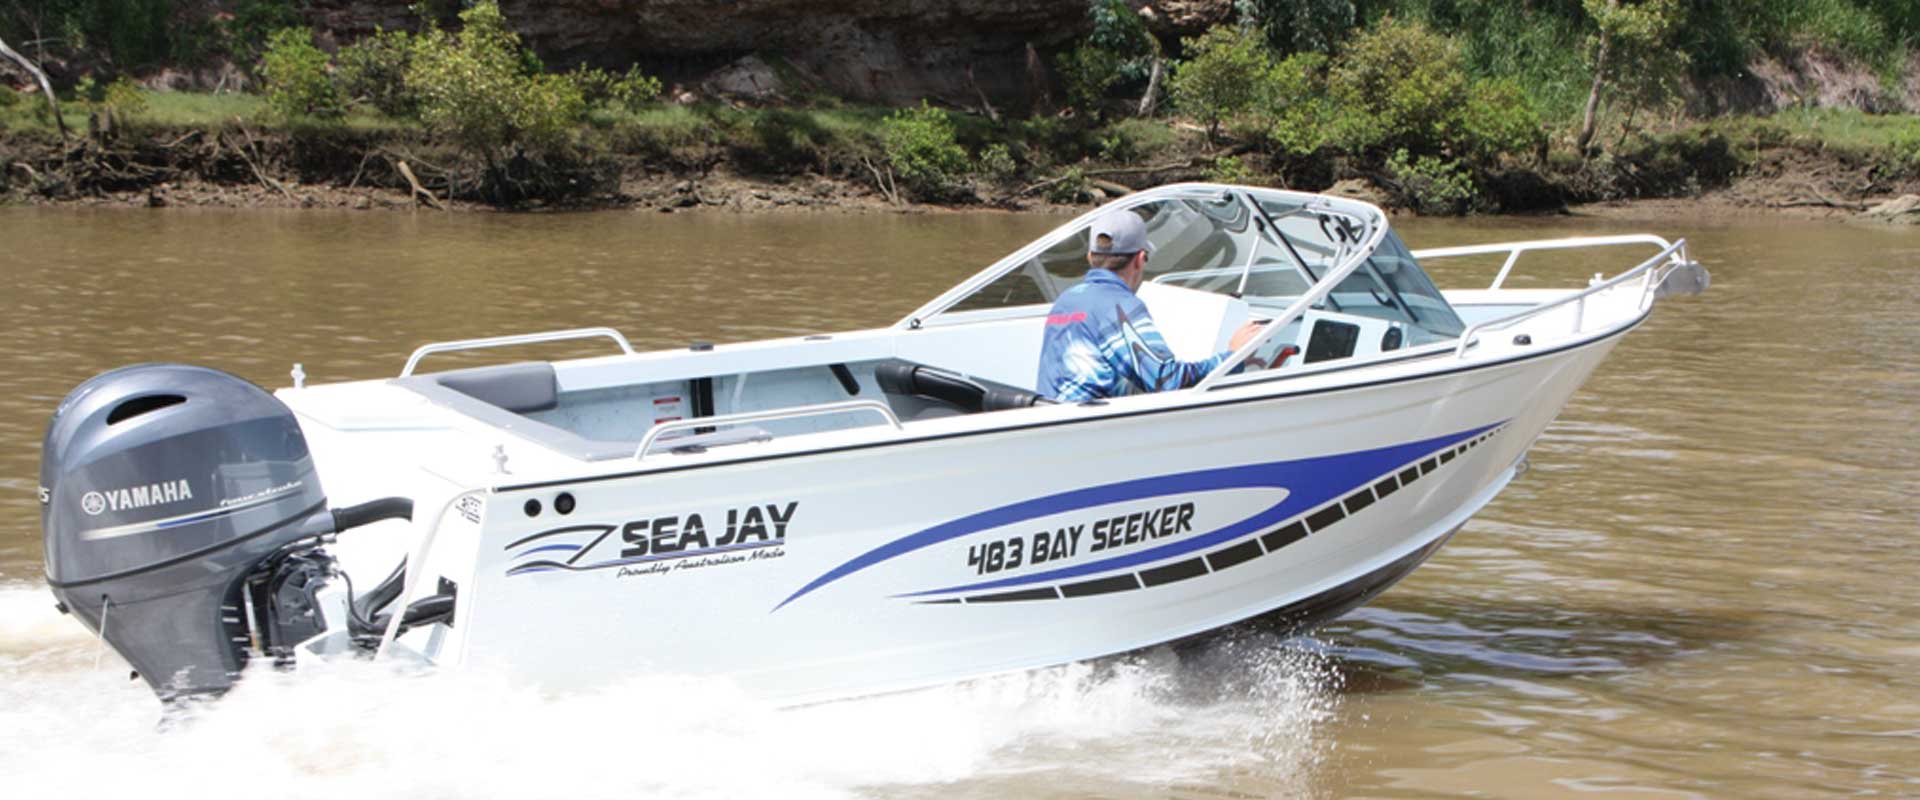 Sea Jay Bay Seeker 4.83